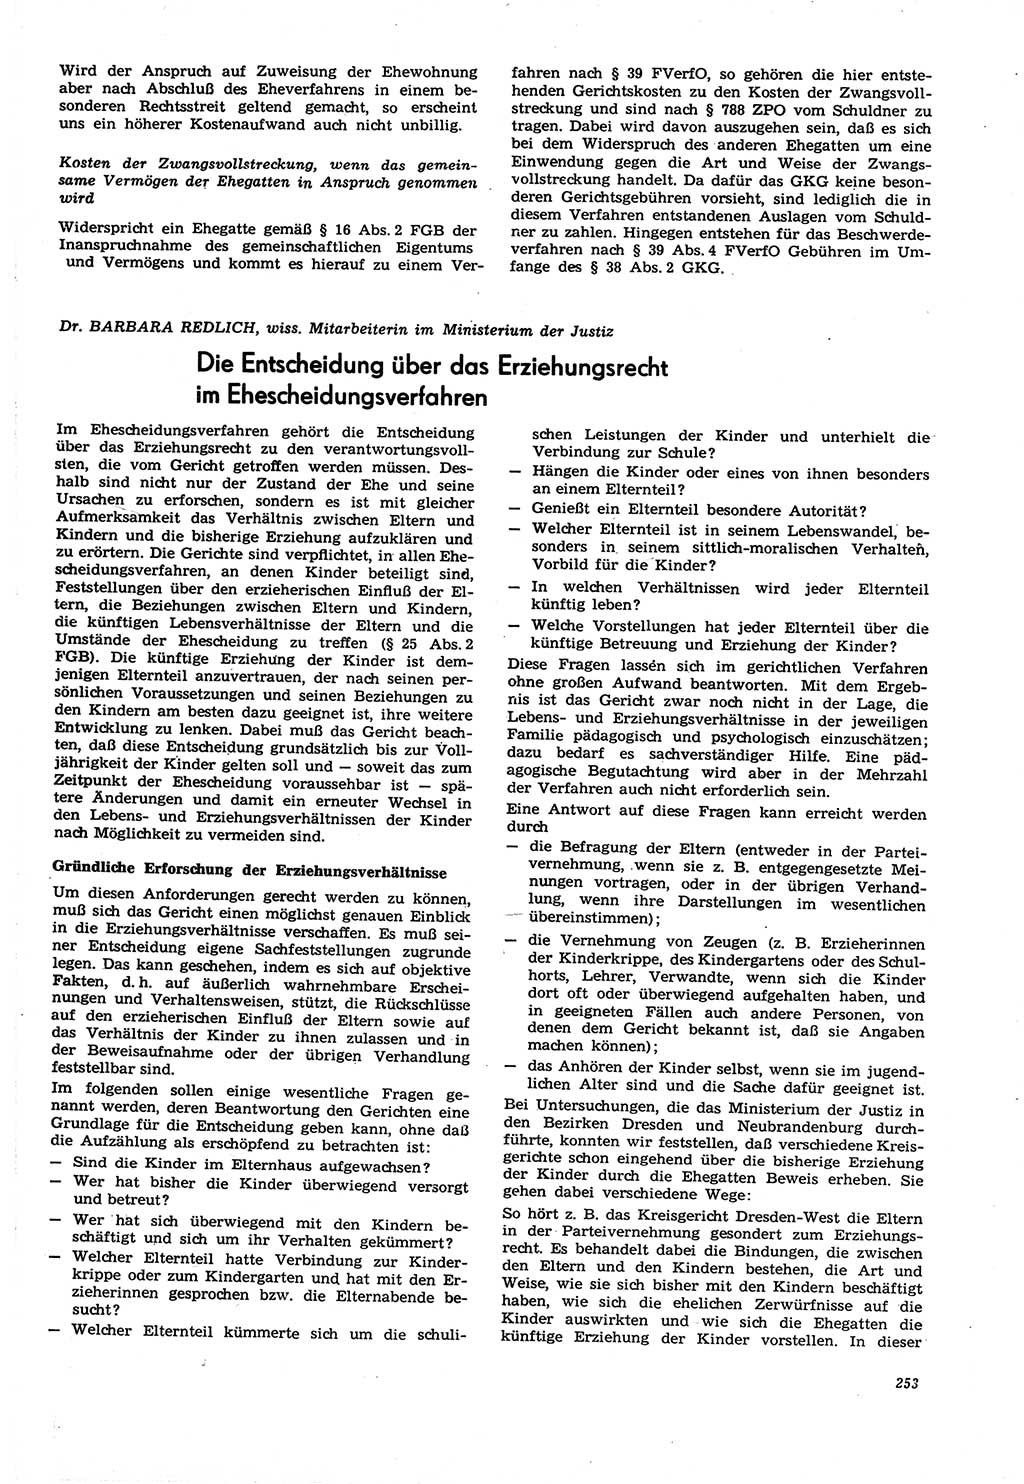 Neue Justiz (NJ), Zeitschrift für Recht und Rechtswissenschaft [Deutsche Demokratische Republik (DDR)], 21. Jahrgang 1967, Seite 253 (NJ DDR 1967, S. 253)